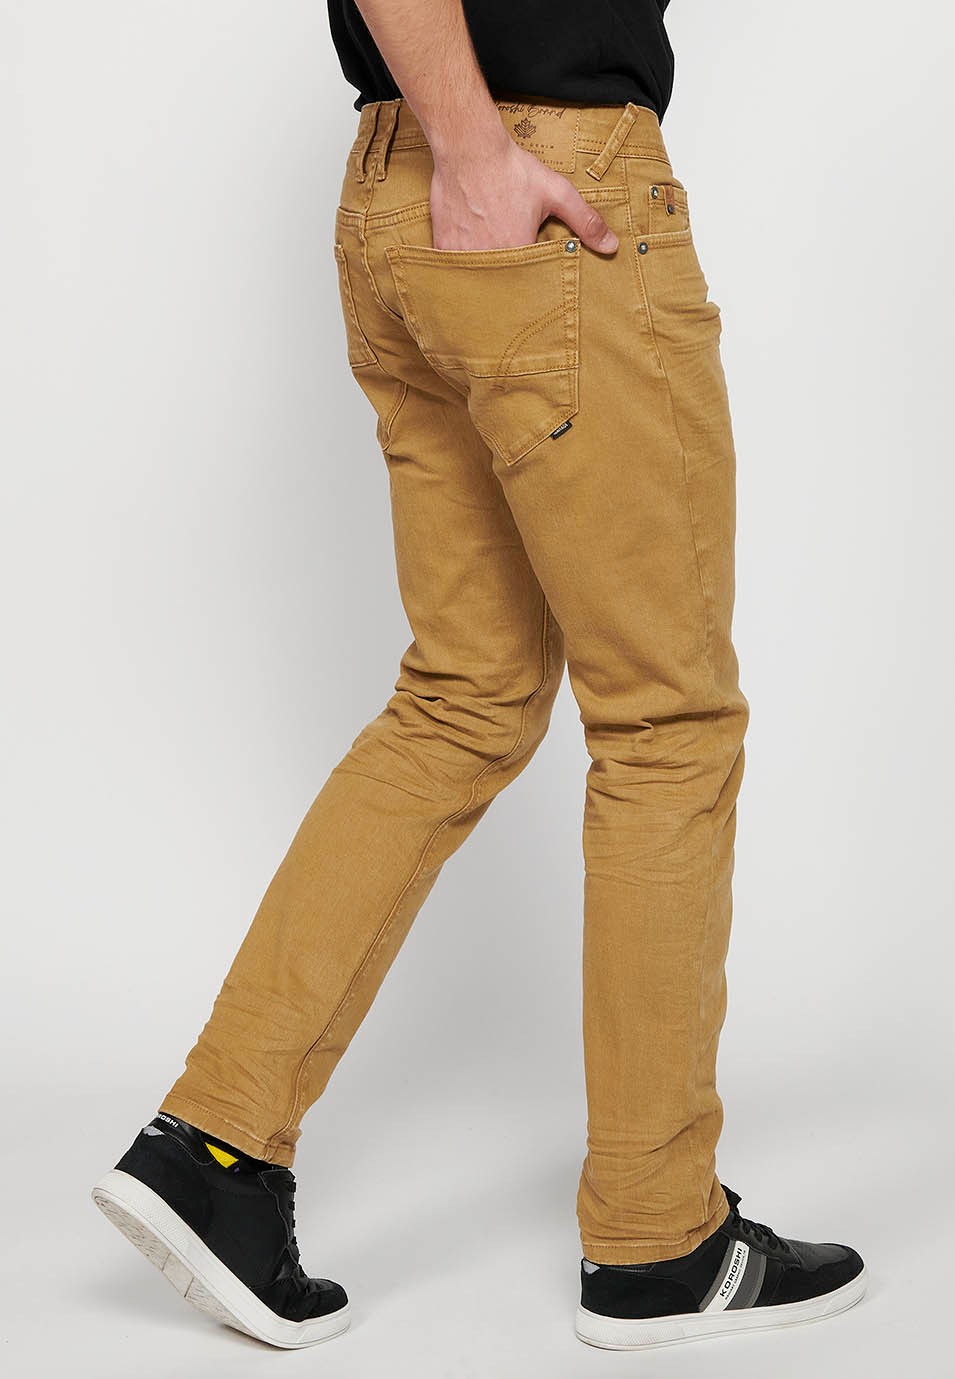 Pantalón largo straigth regular fit con Cierre delantero con cremallera y botón con Cinco bolsillos, uno cerillero de Color Tostado para Hombre